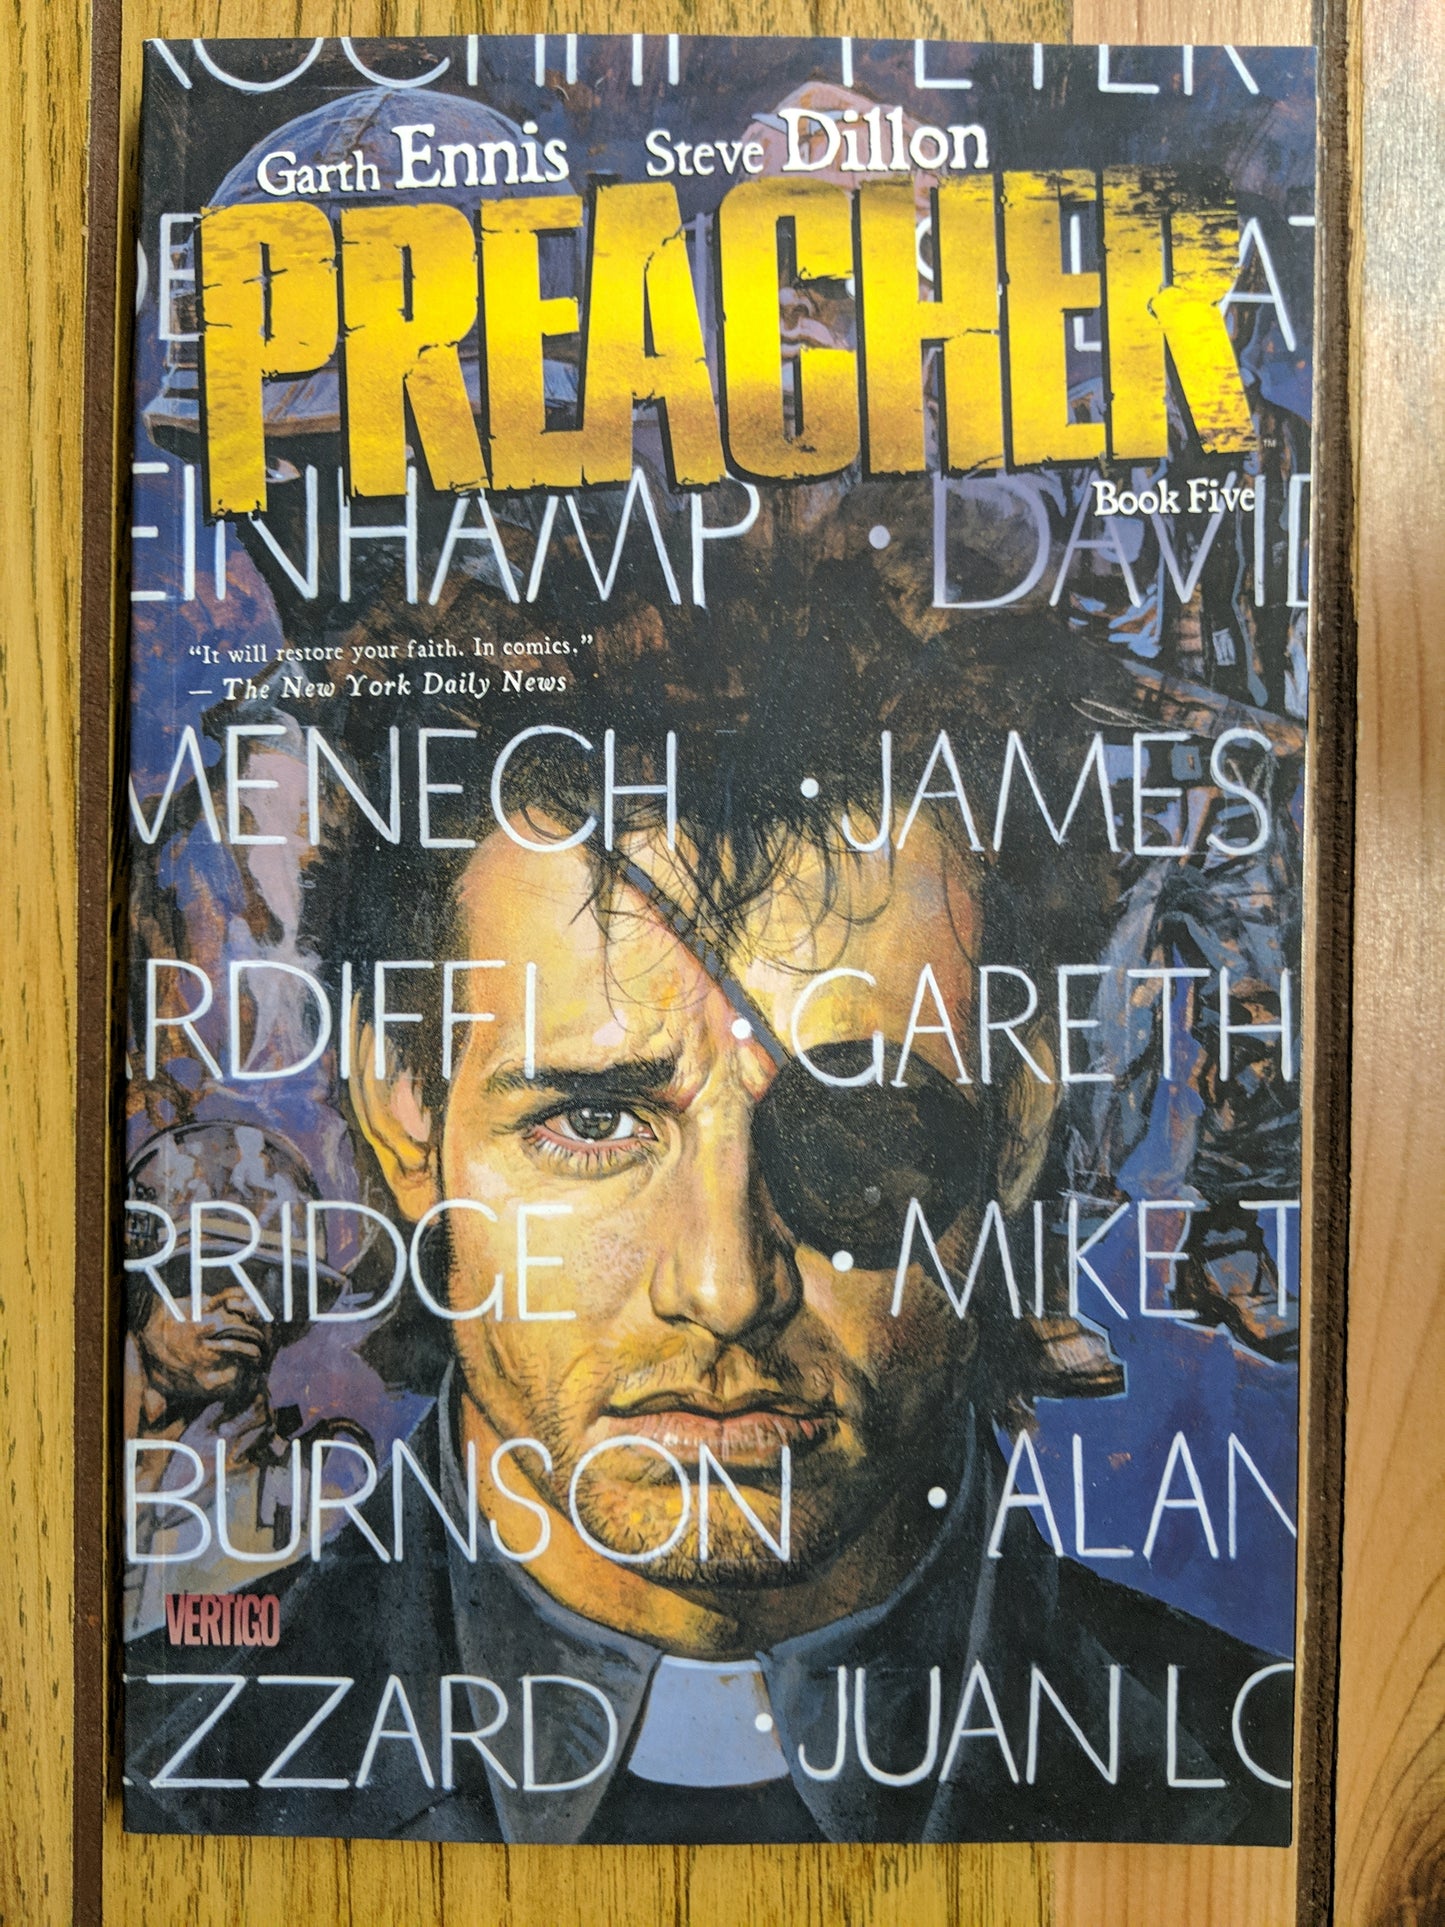 Preacher Vol 5